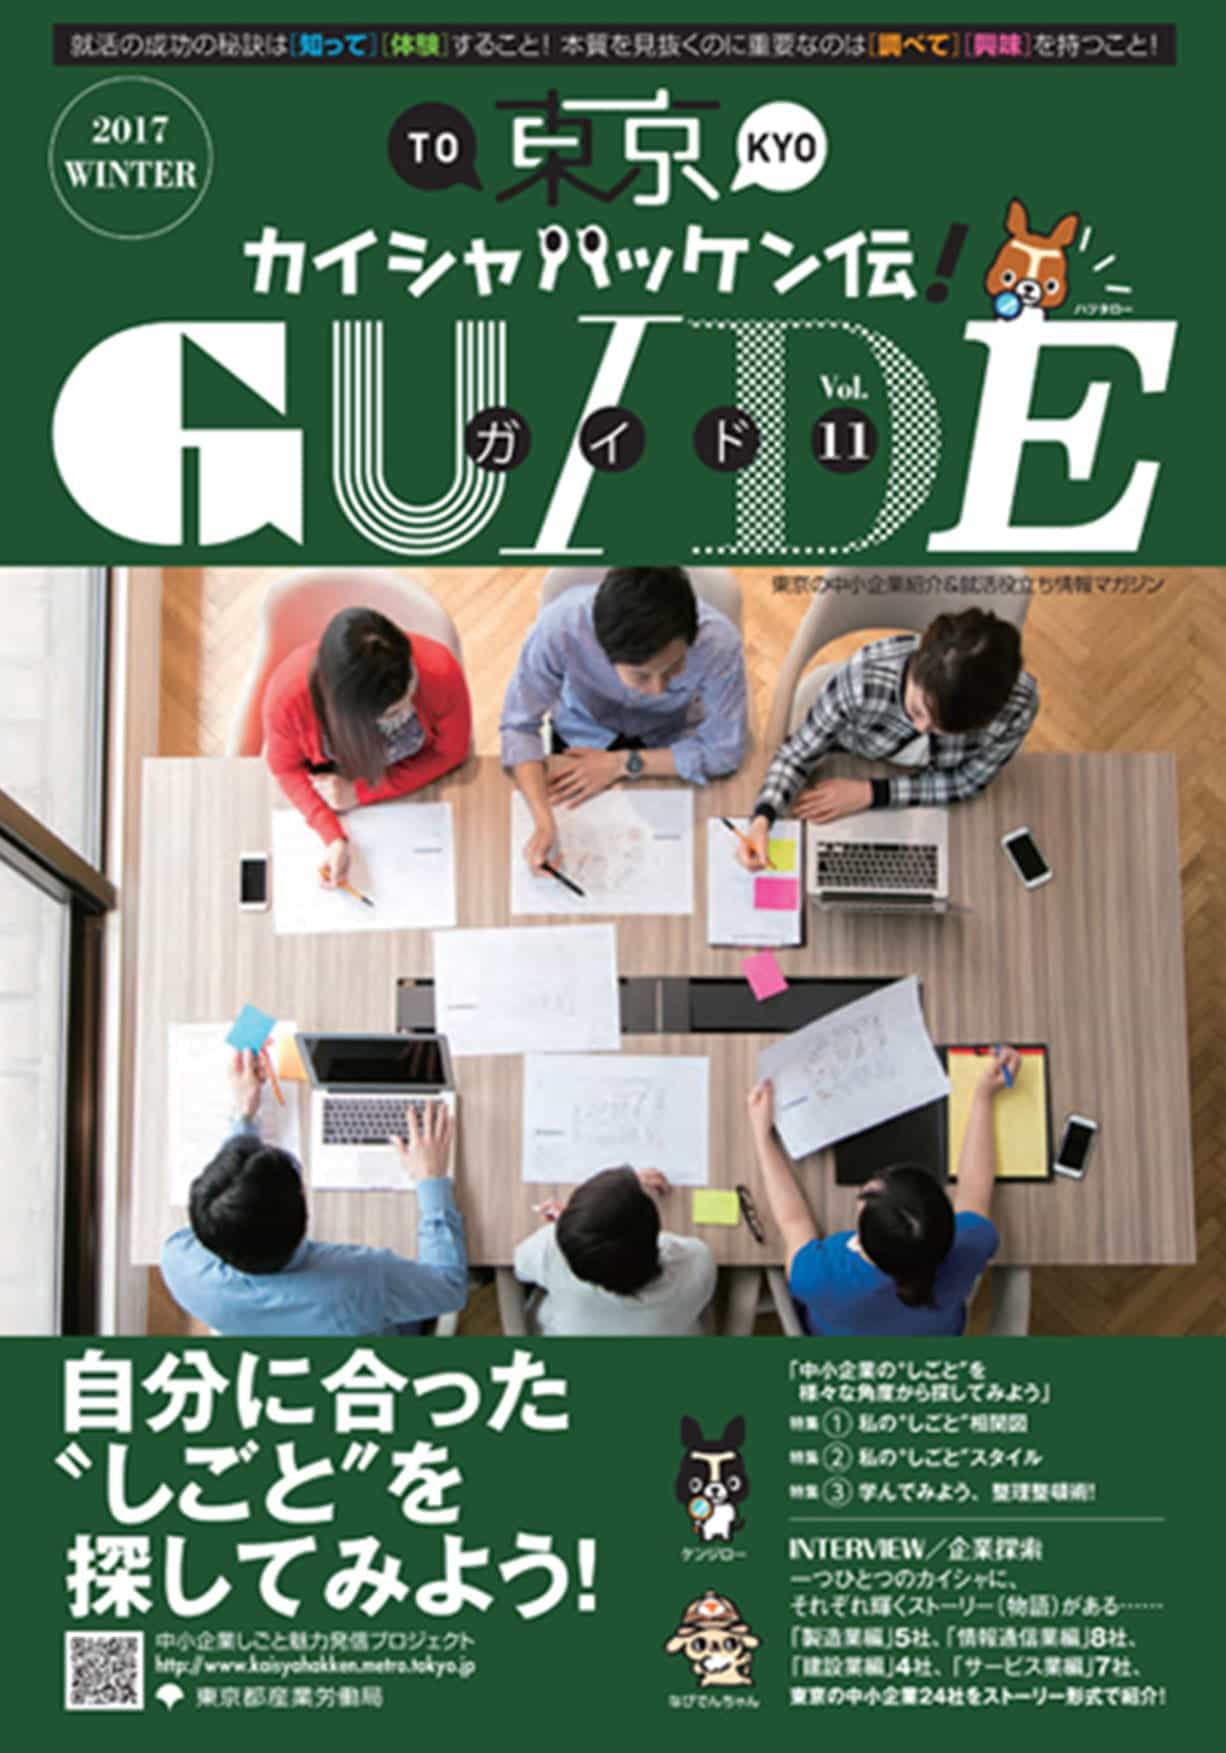 東京カイシャハッケン伝！GUIDE vol11